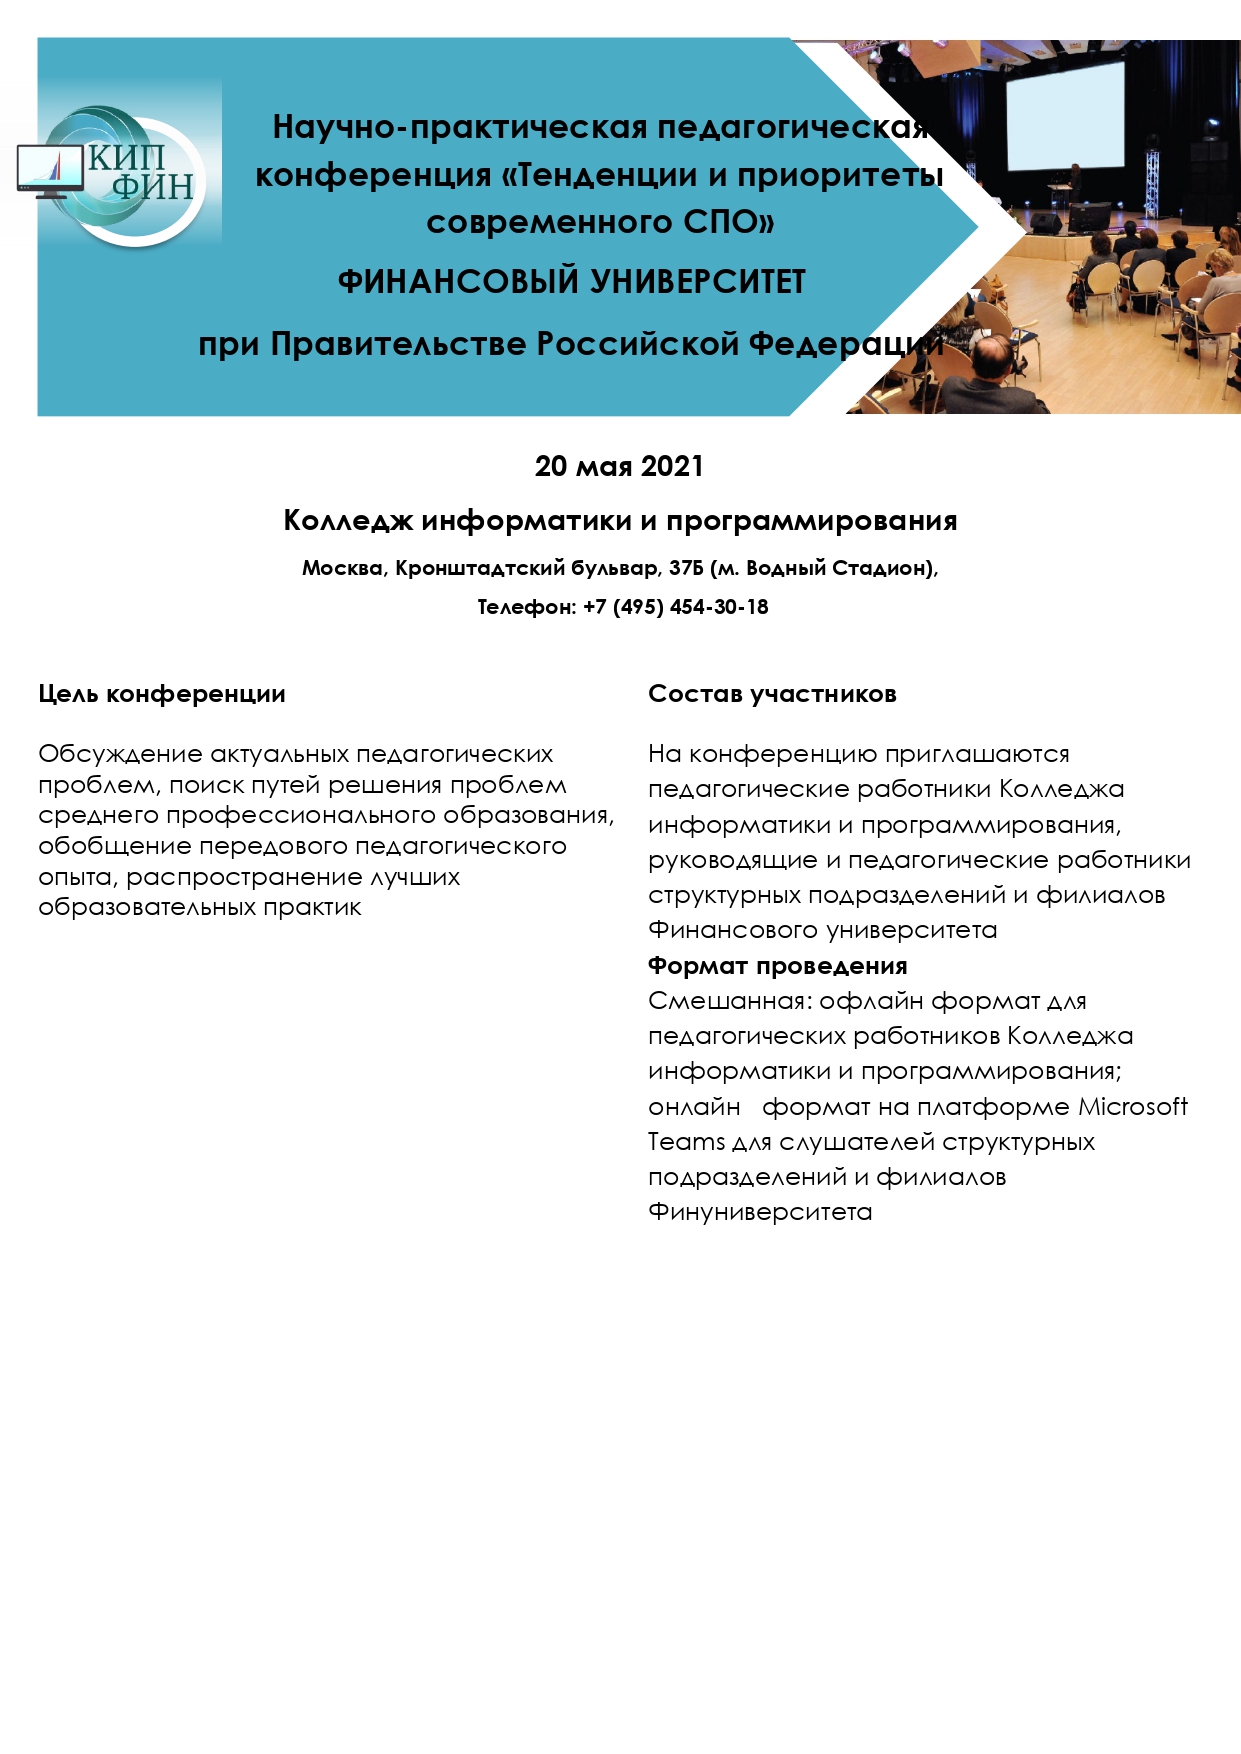 Программа конференции20.05.2021 (002)_page-0001.jpg